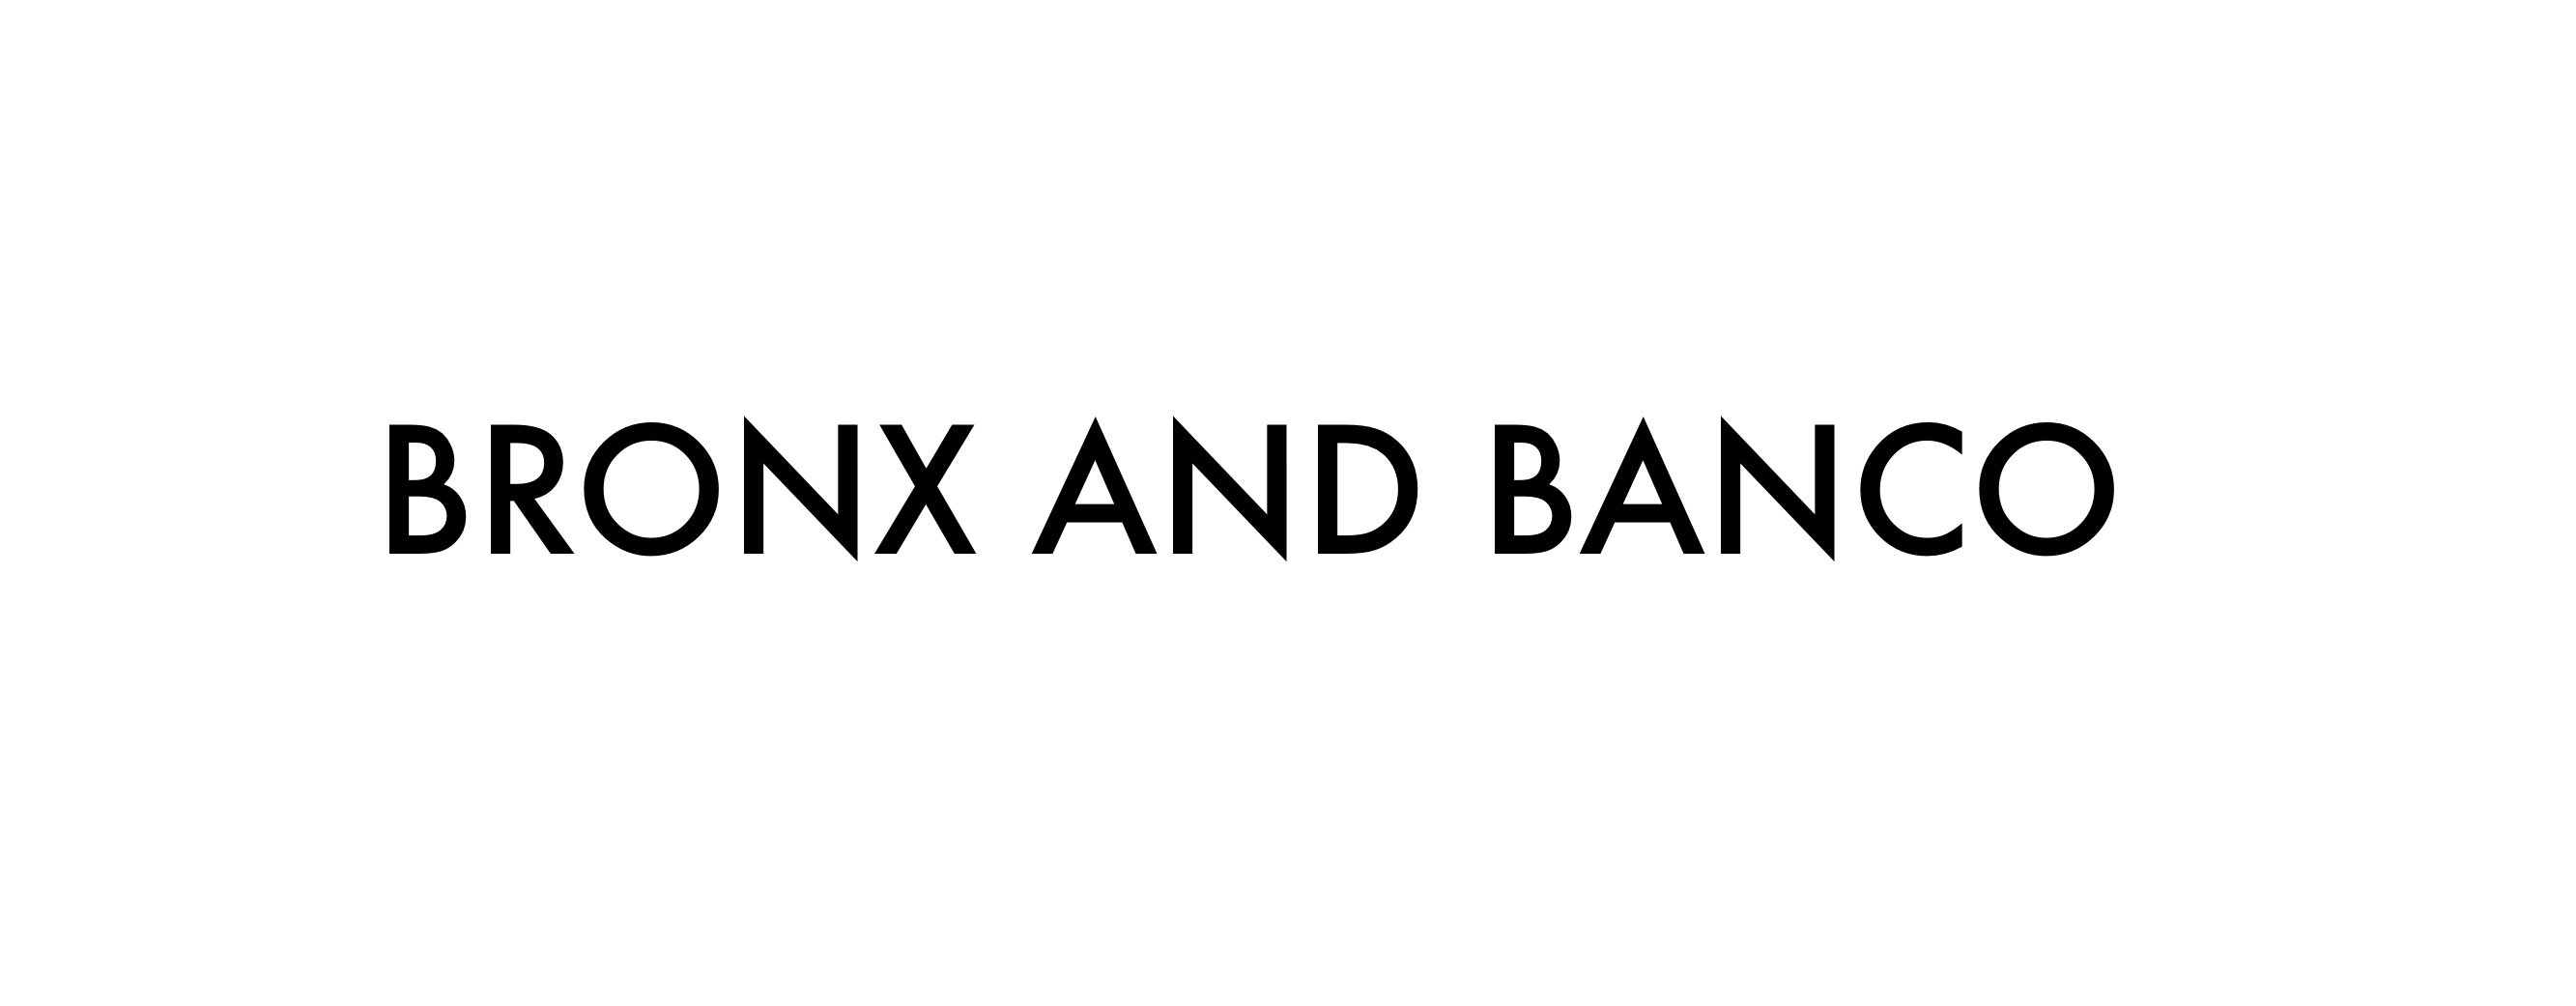 Bronx And Banco logo